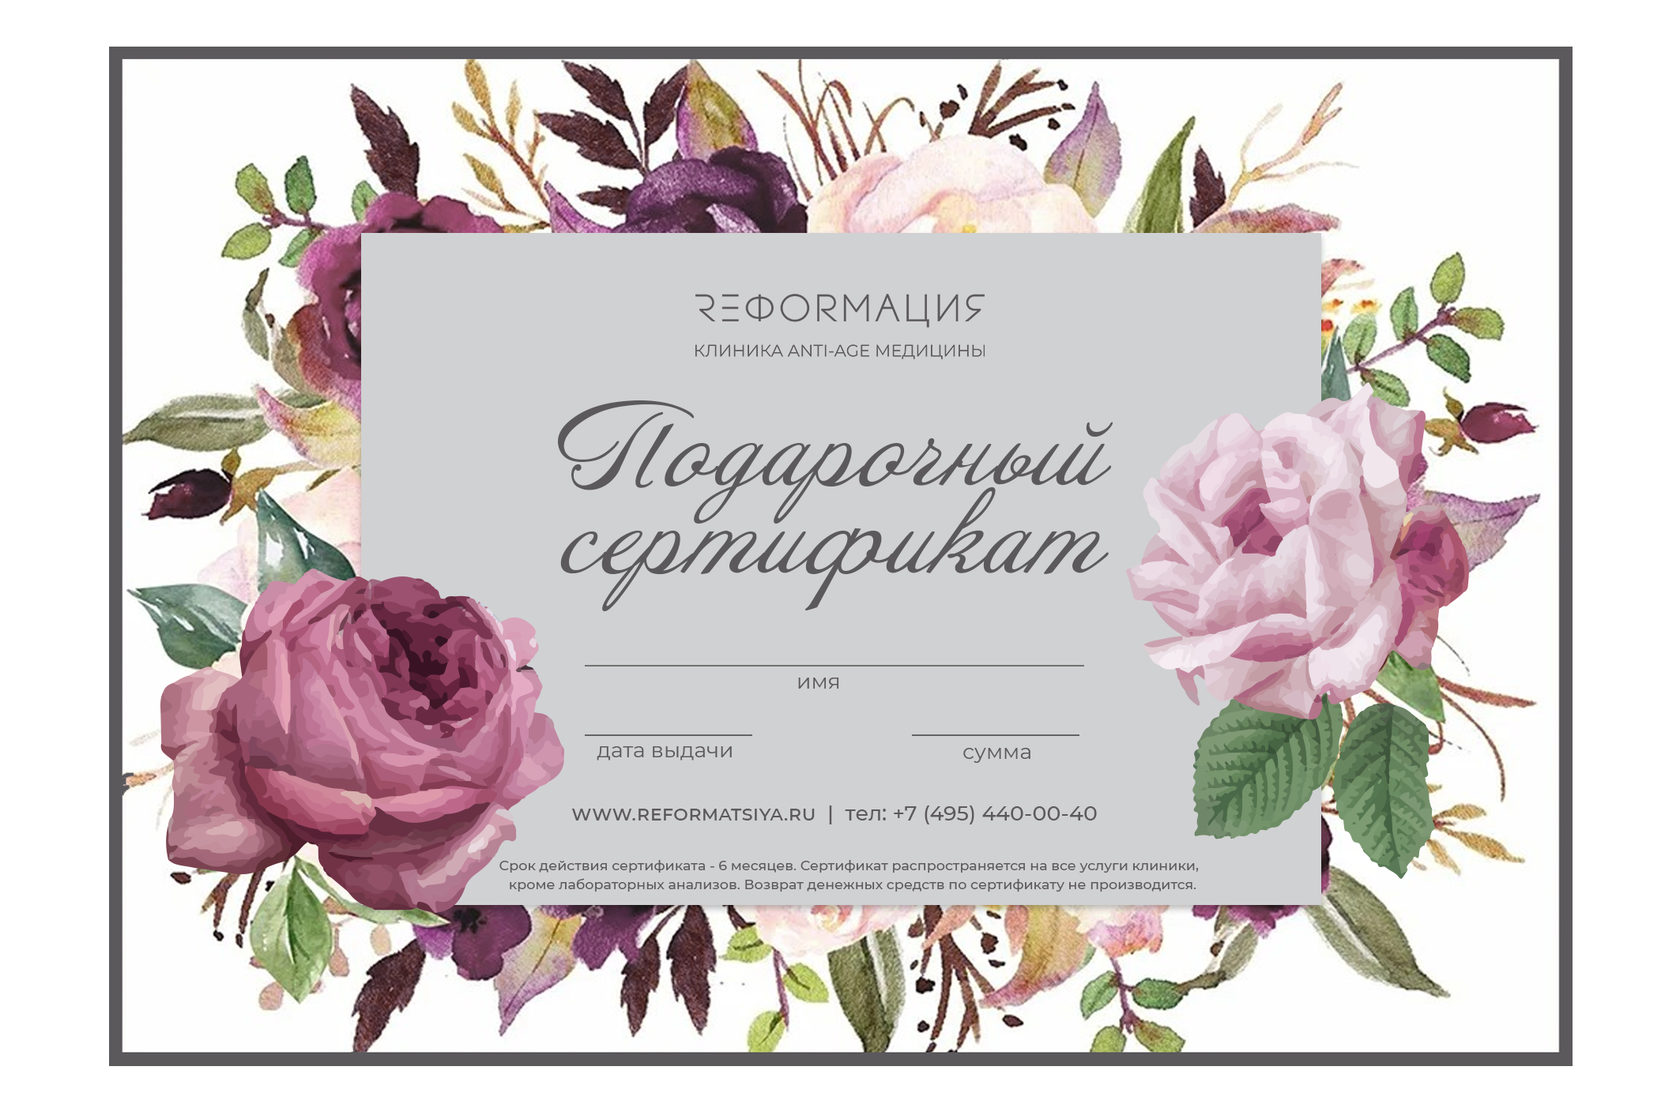 Подарочный сертификат красноярск женщине